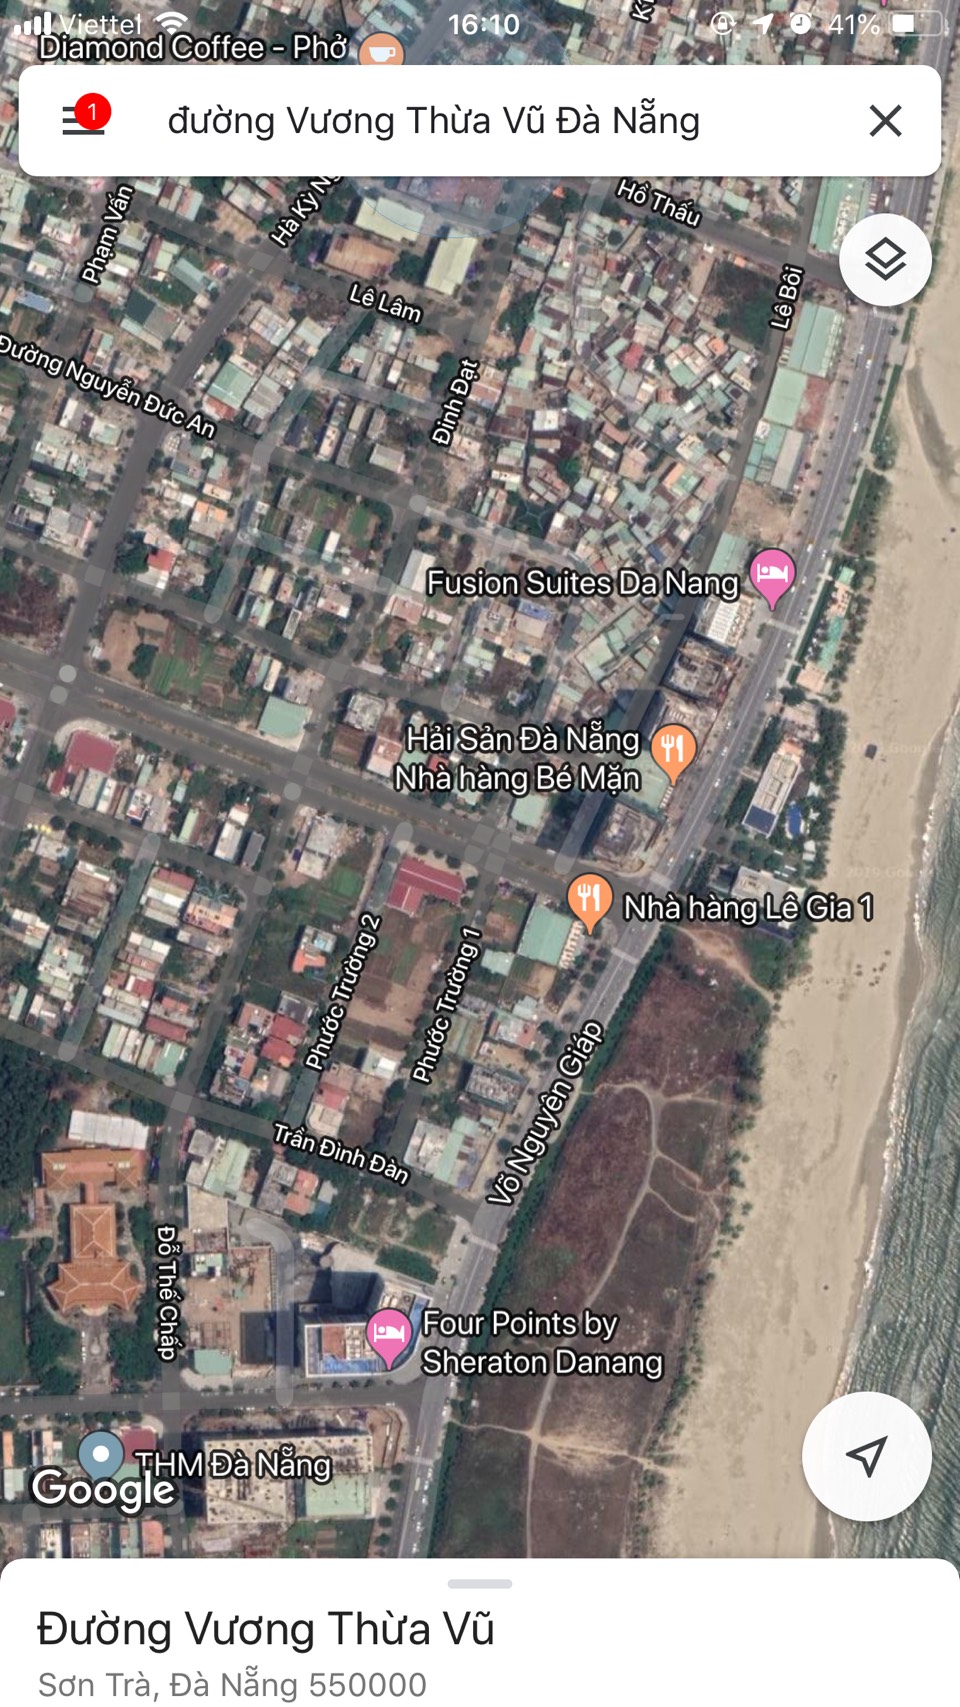 Bán gấp 90 m2 đất biển đường Vương Thừa Vũ,Đà Nẵng gần biển,giá rẻ hơn thị trường 2 tỷ.LH ngay:0905.606.910
 195319